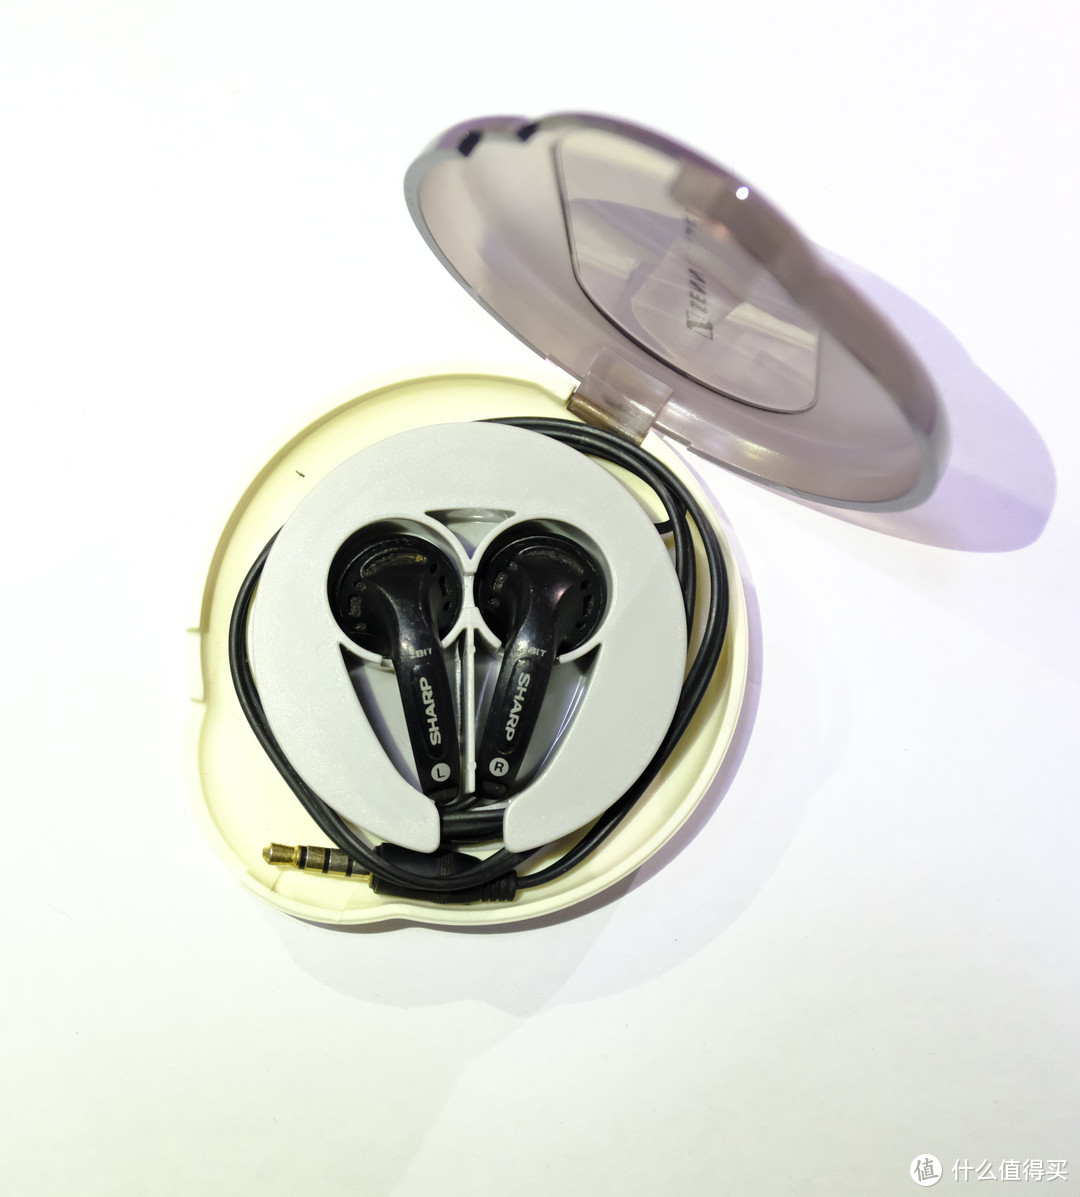 51款平头塞耳机频响曲线测试：平头耳机选购、收藏指南——森海、爱华、AKG、建伍、夏普、索尼等